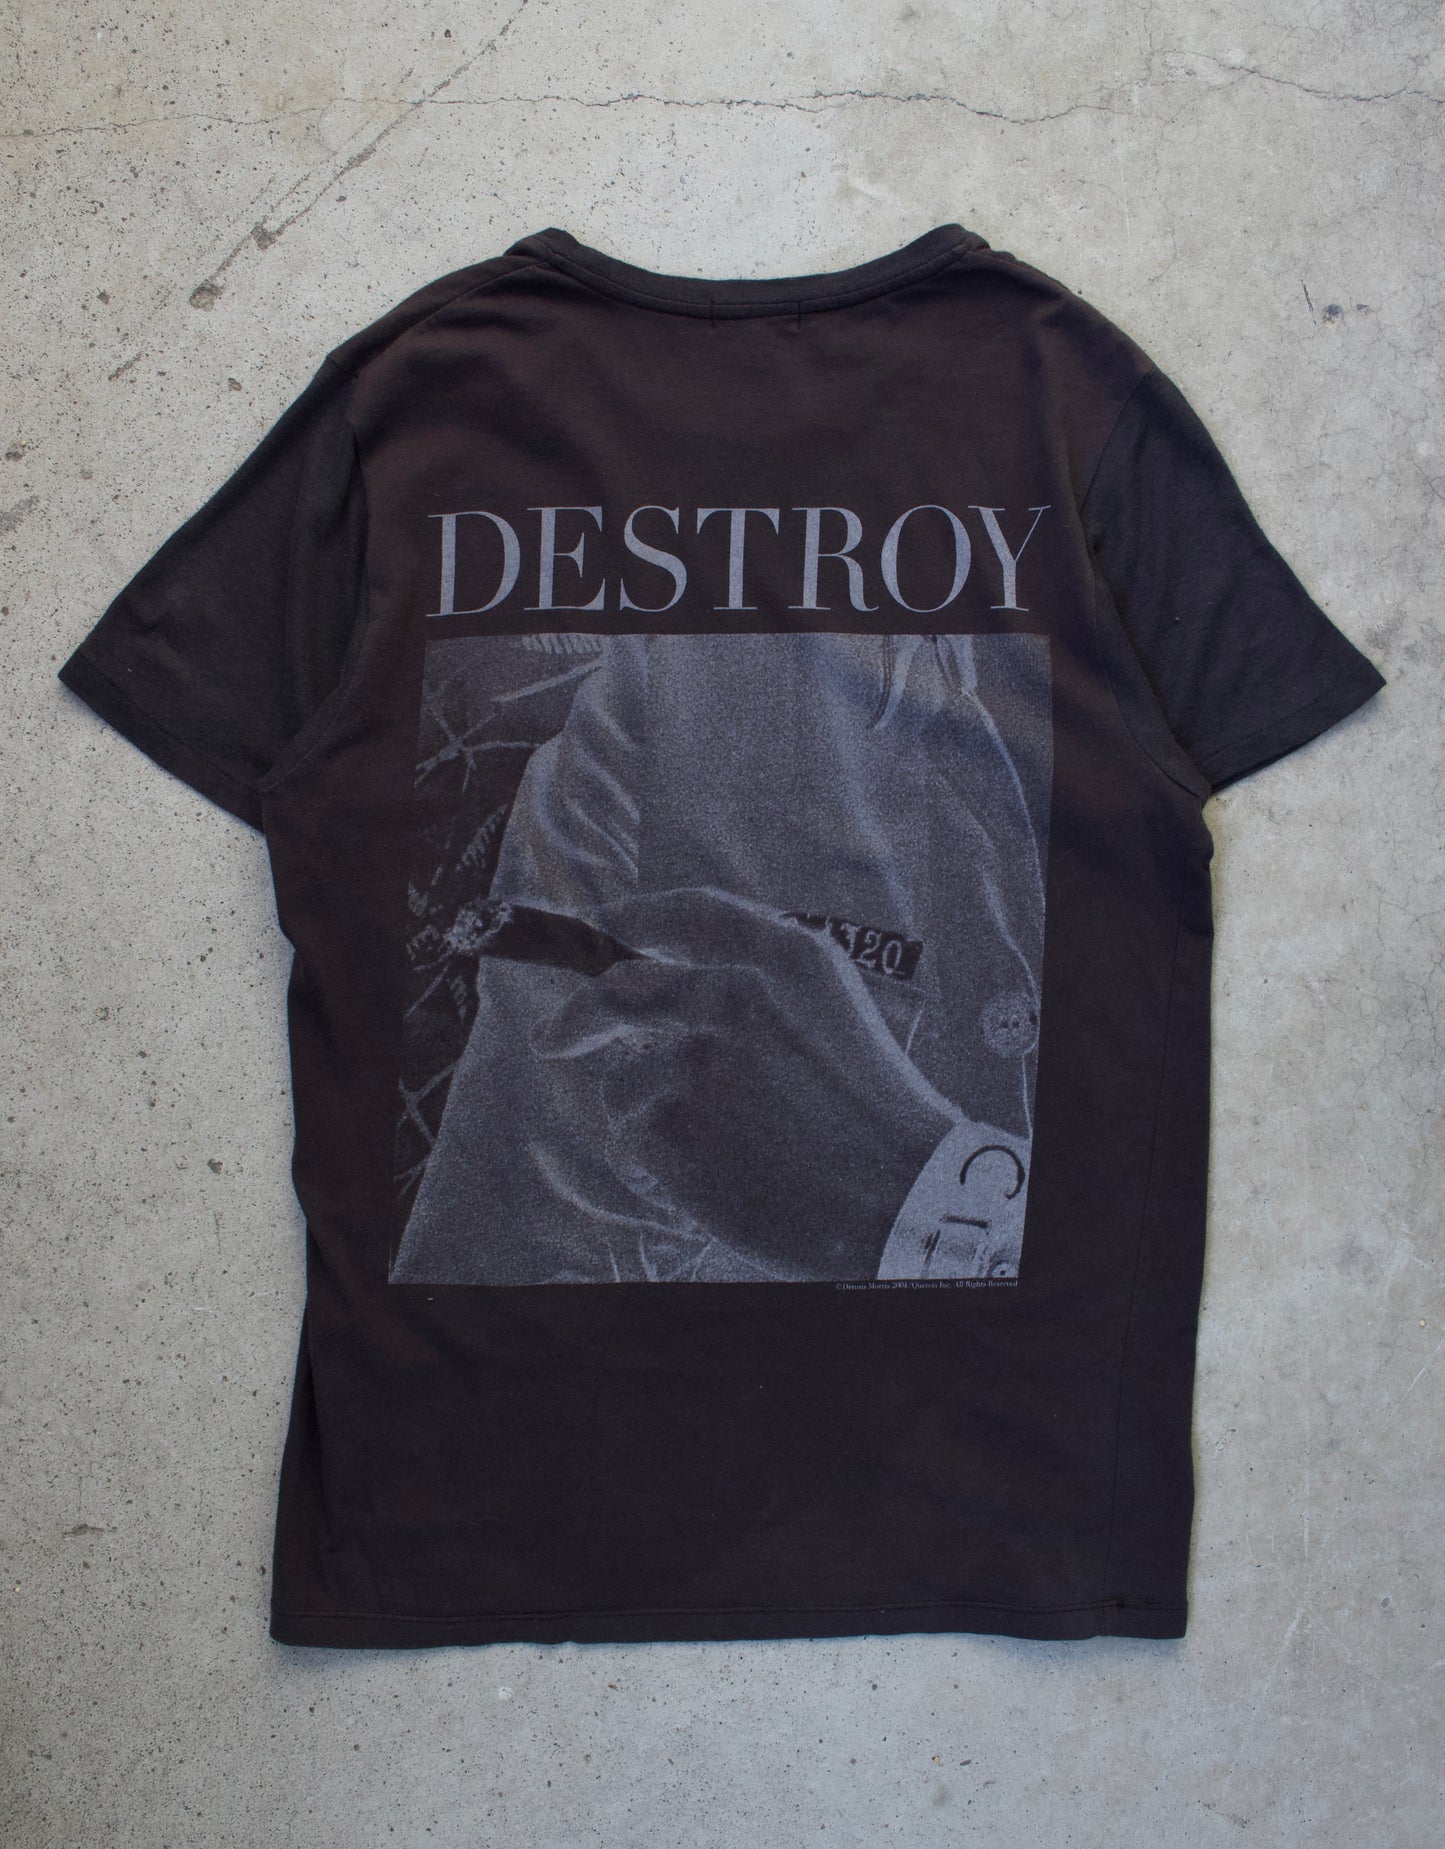 Lad Musician SS04 ‘Dennis Morris’ “Destroy” Graphic T-shirt